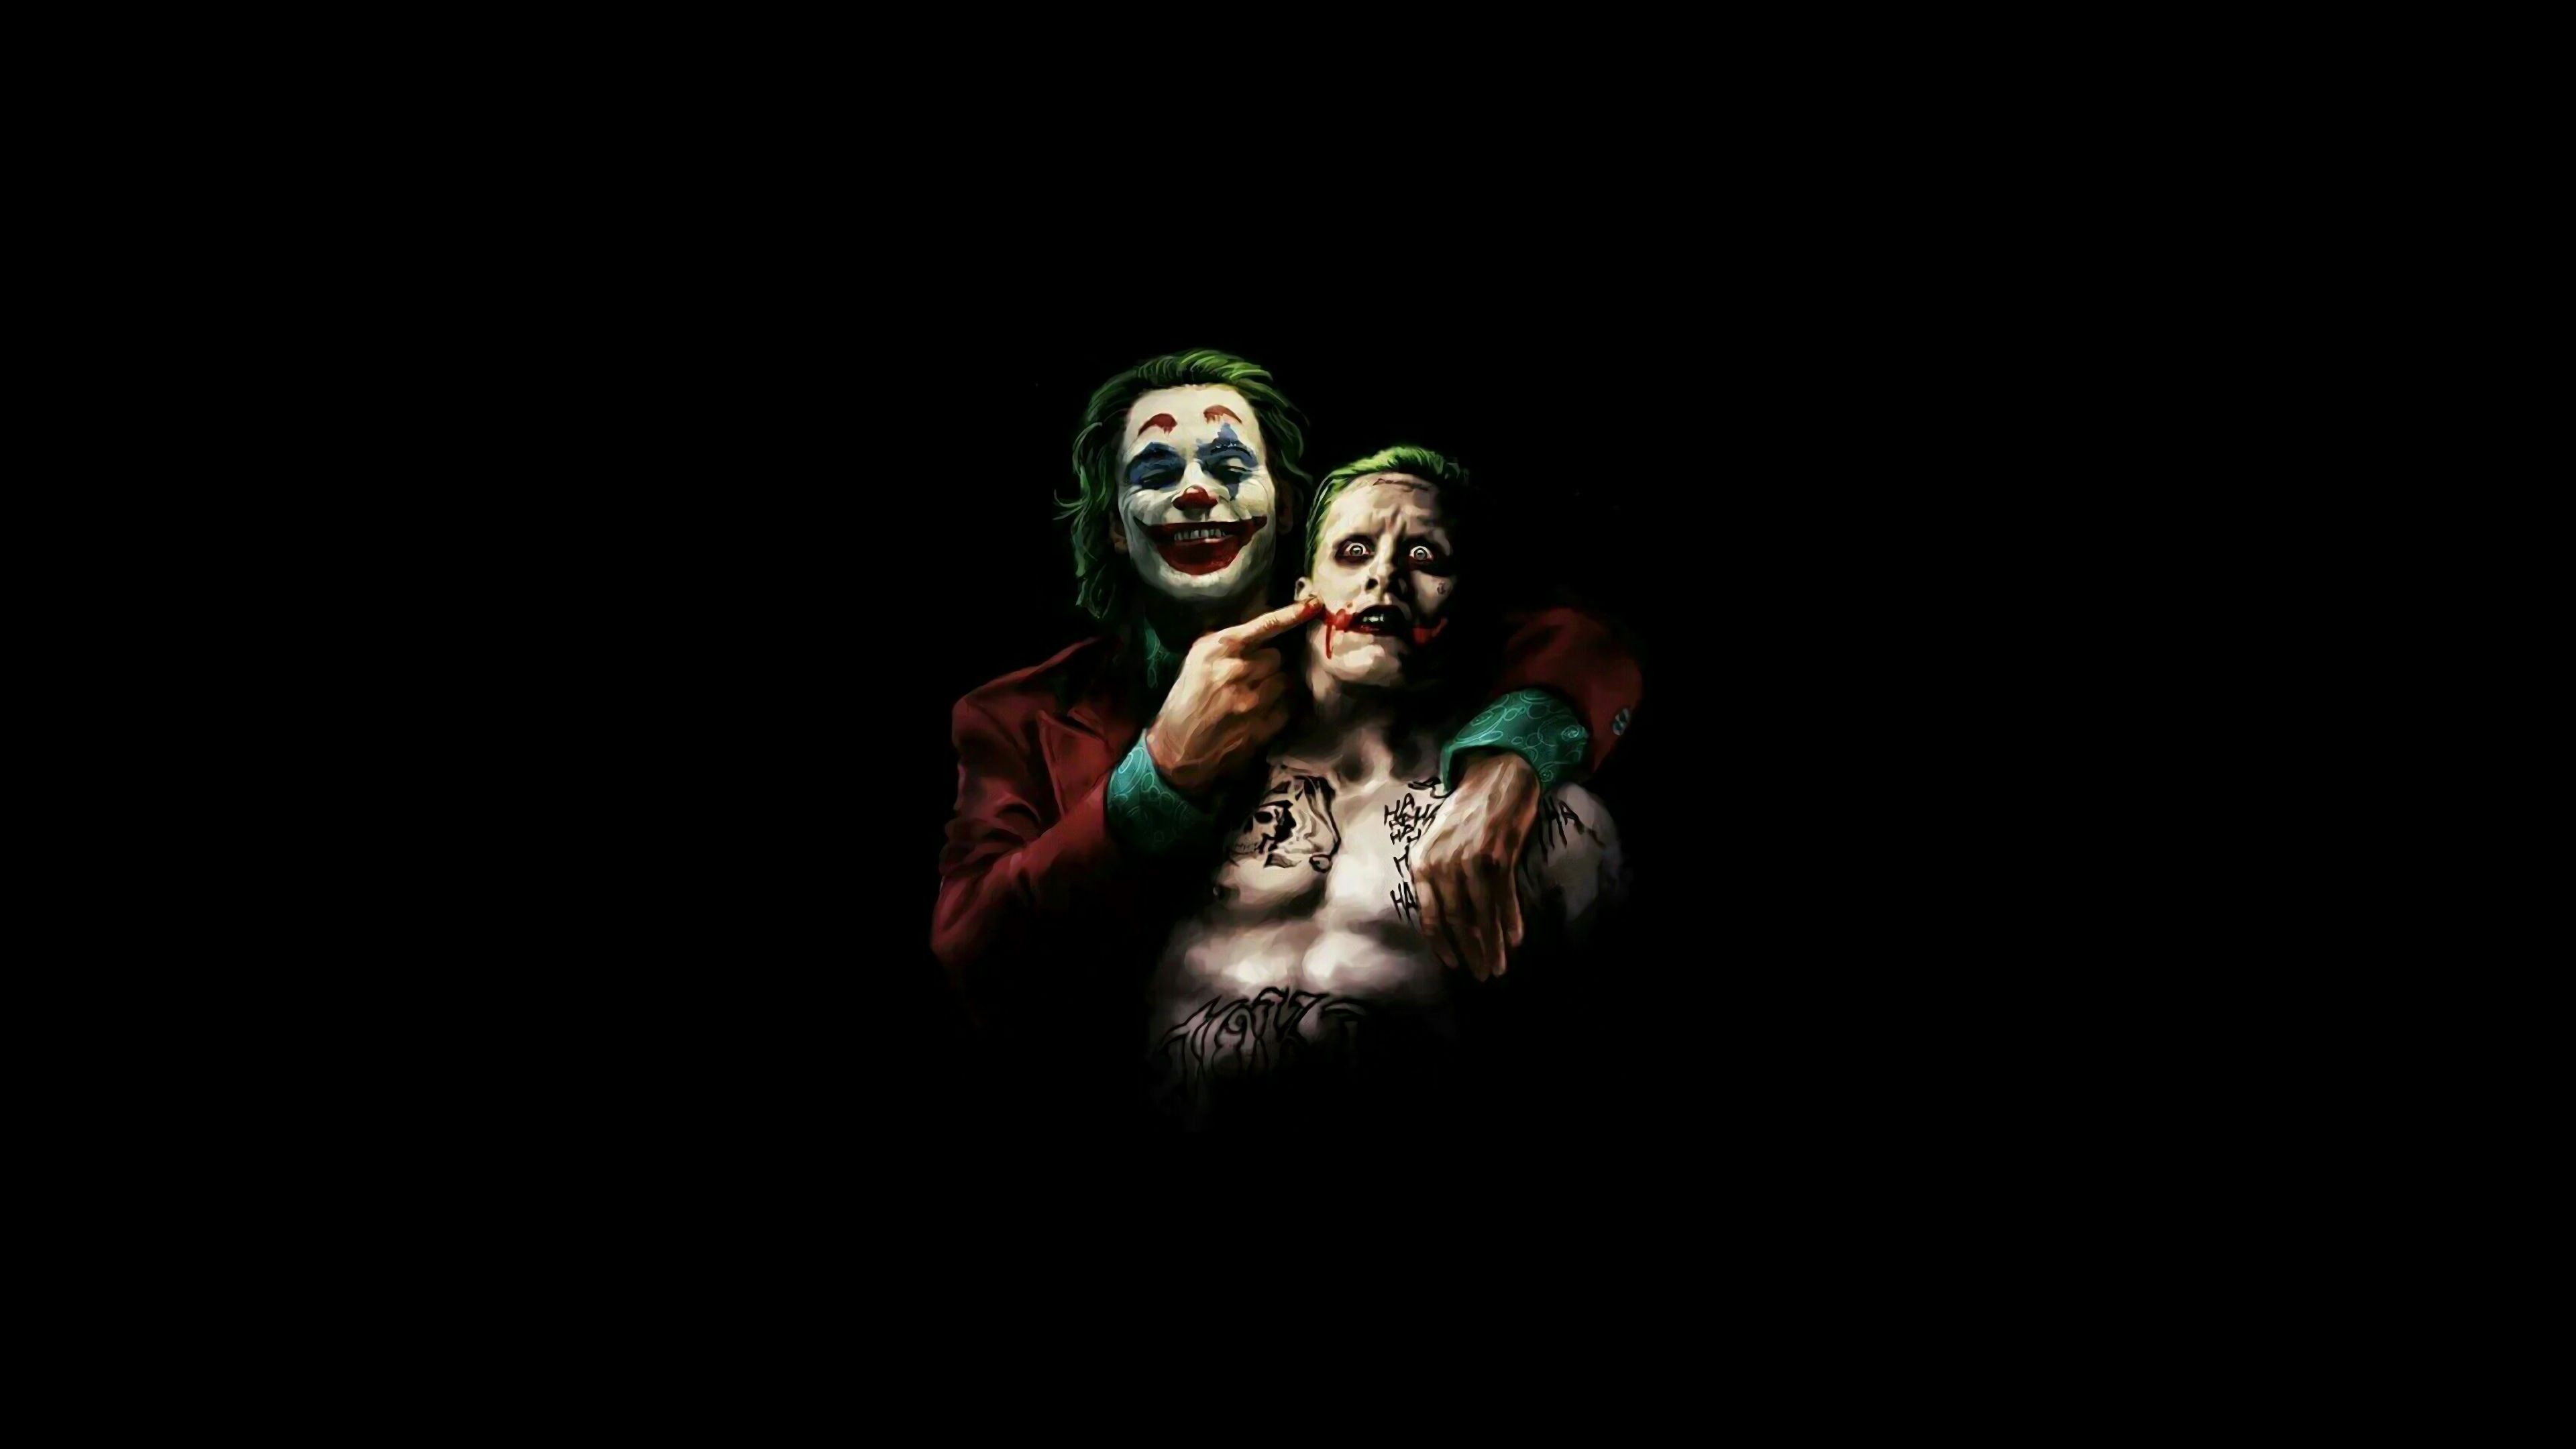 Joker HD Wallpaper For iPhone